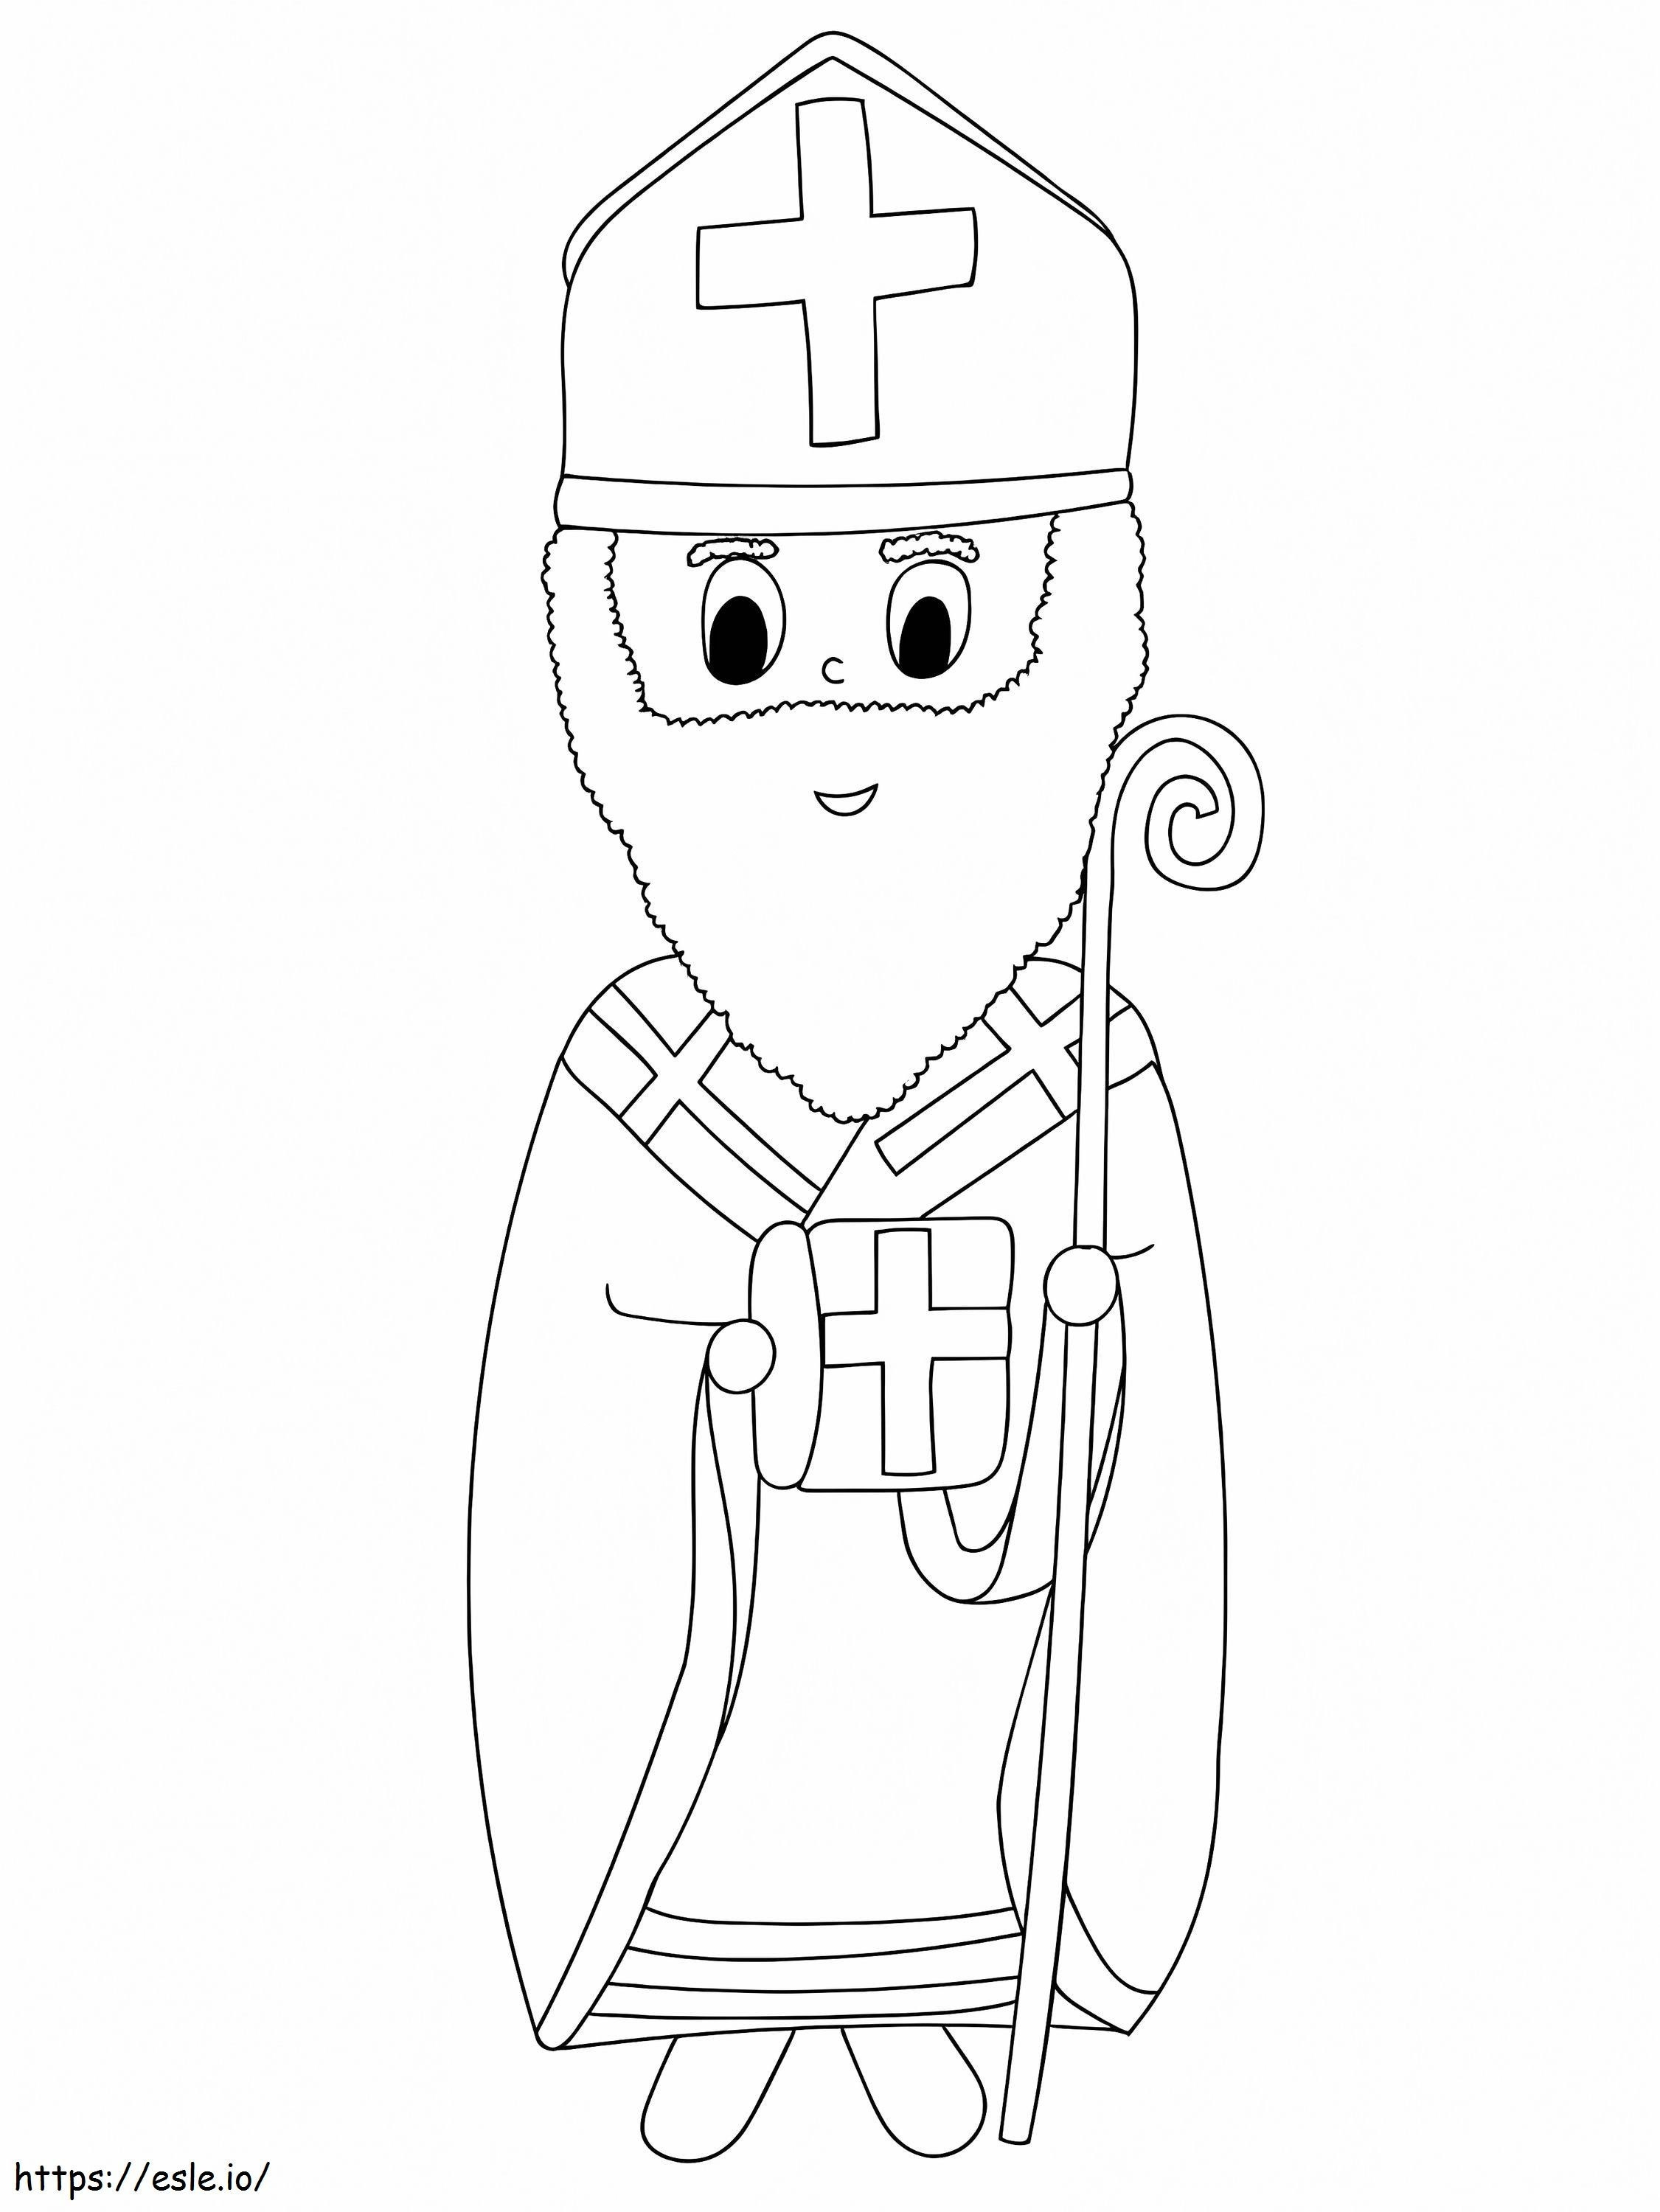 Saint Nicholas 1 coloring page